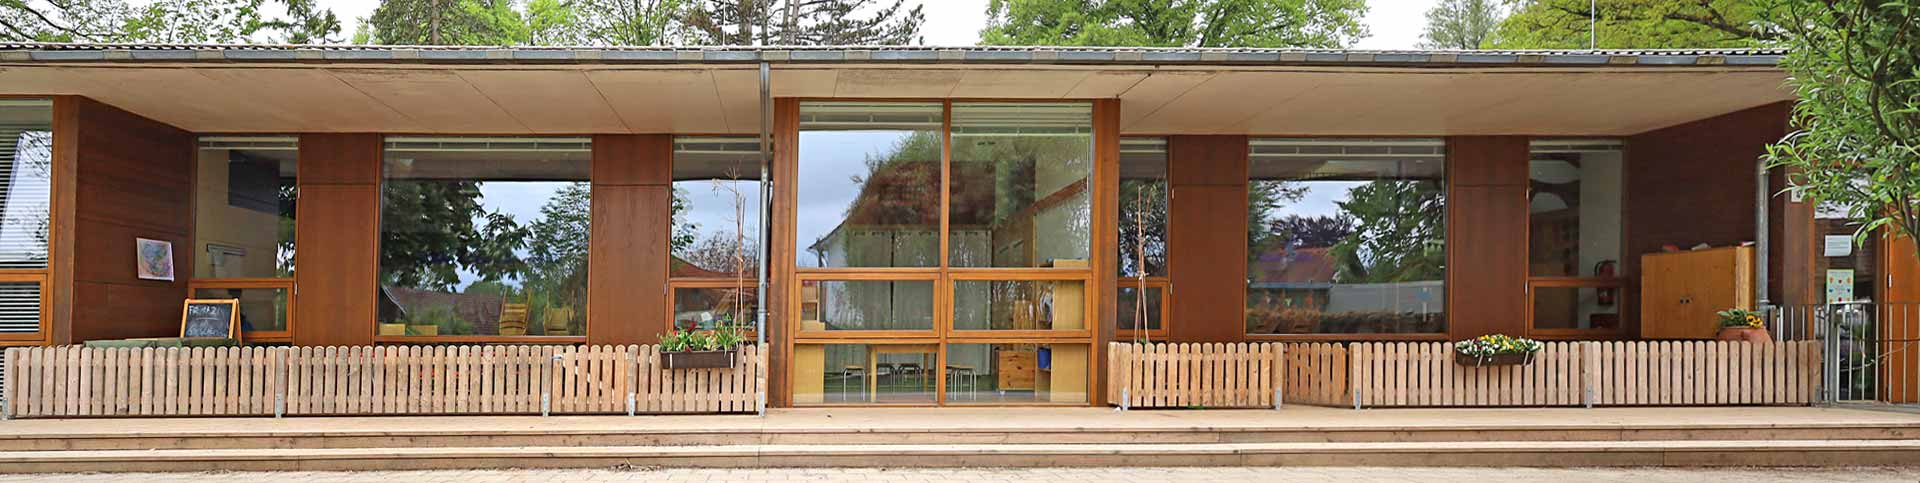 Fensterfassade mit Terrasse des Haupthauses von Garten aus 